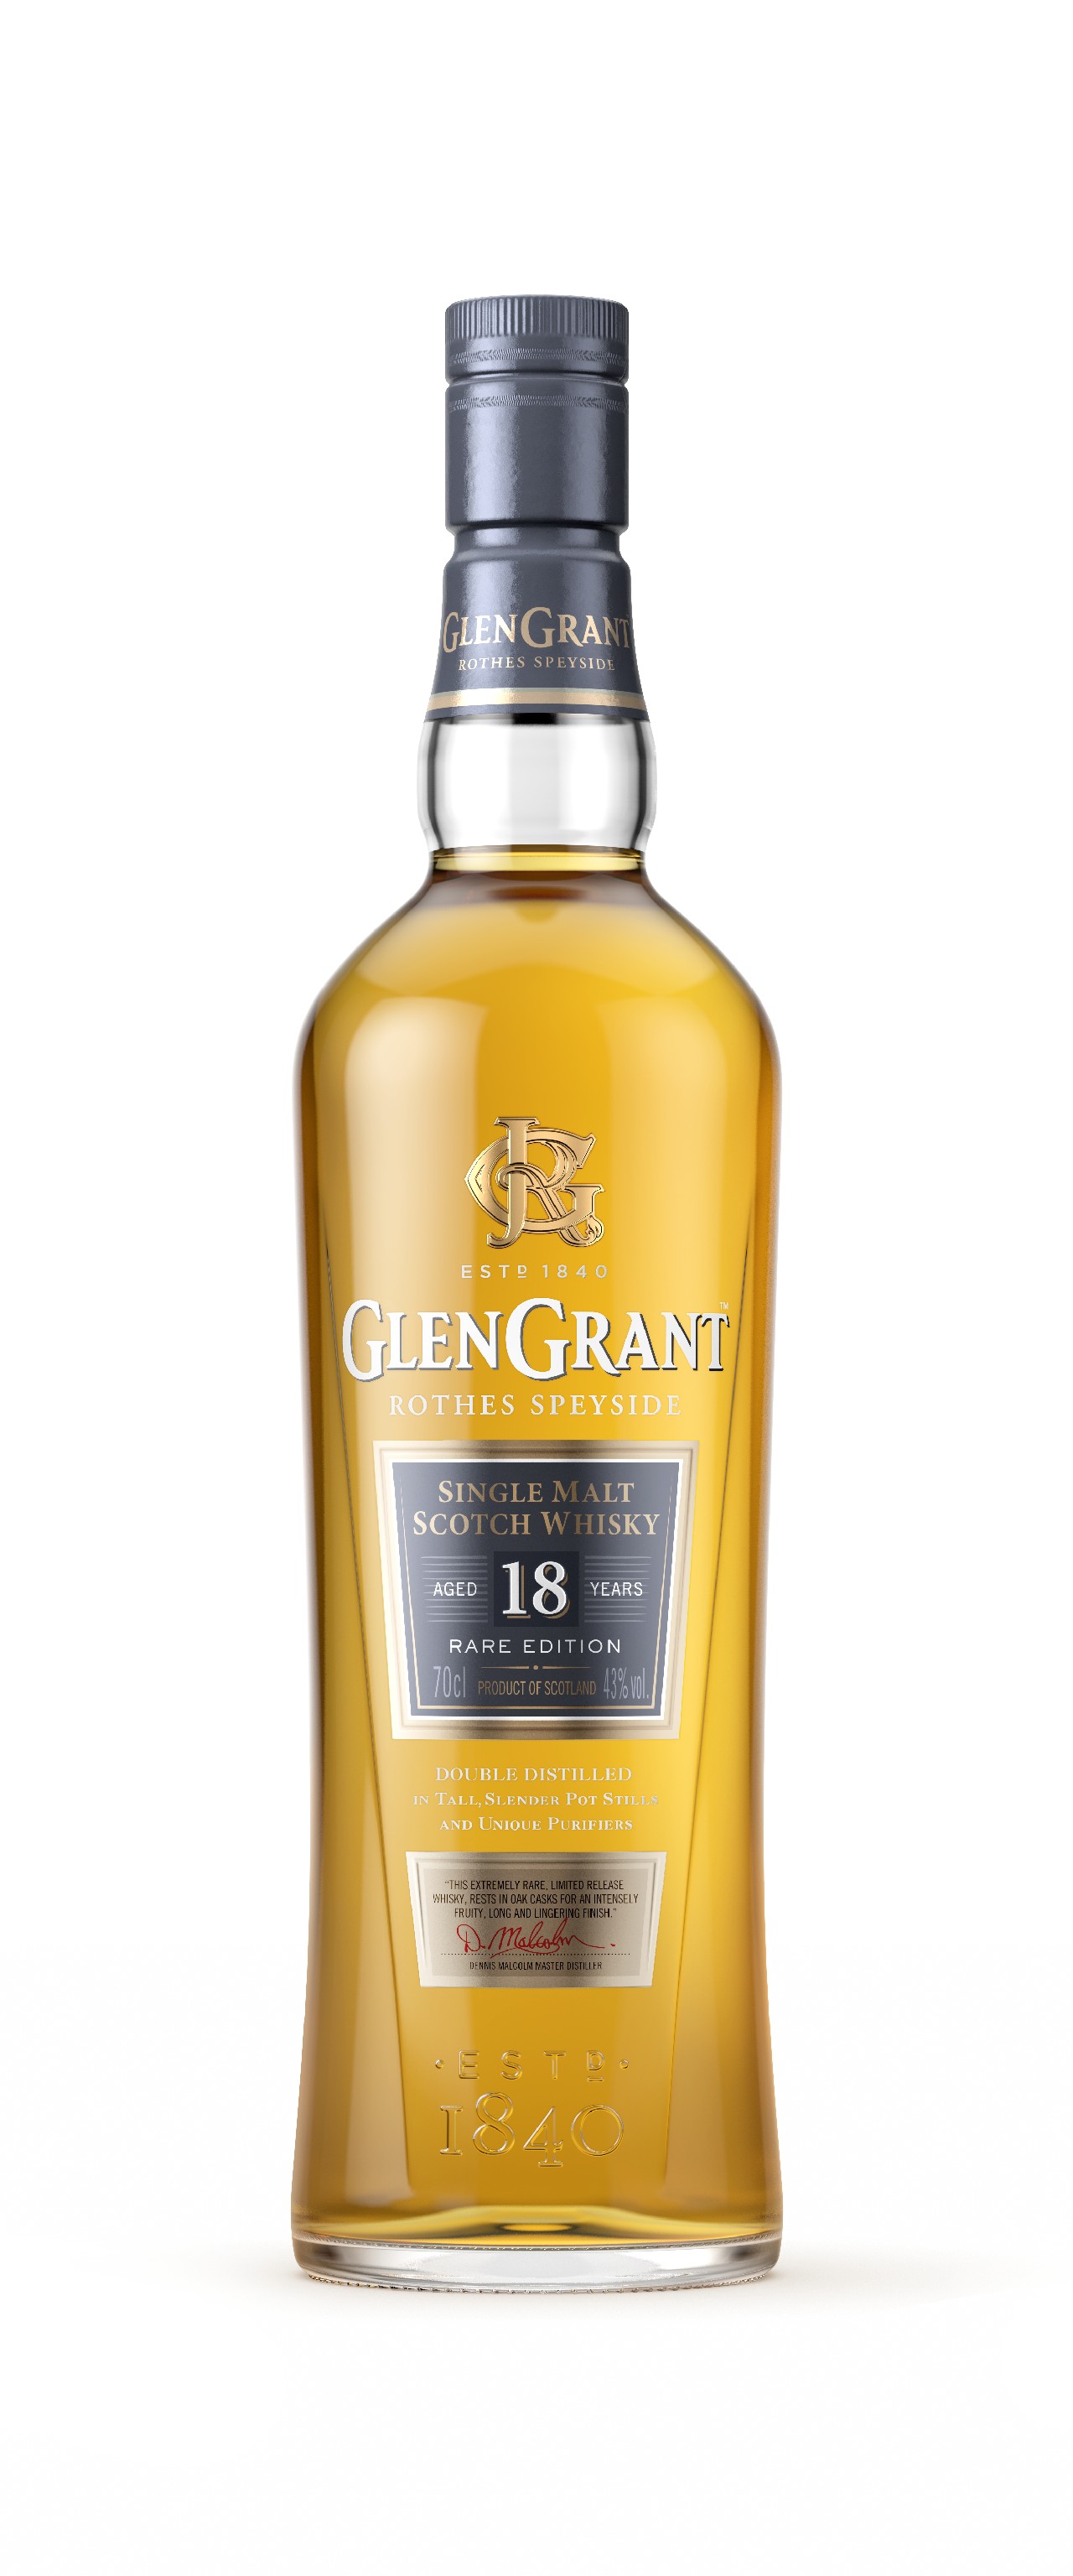 Glen Grant nuovi wisky premium: il Single Malt 12 Year Old e 18 Year Old